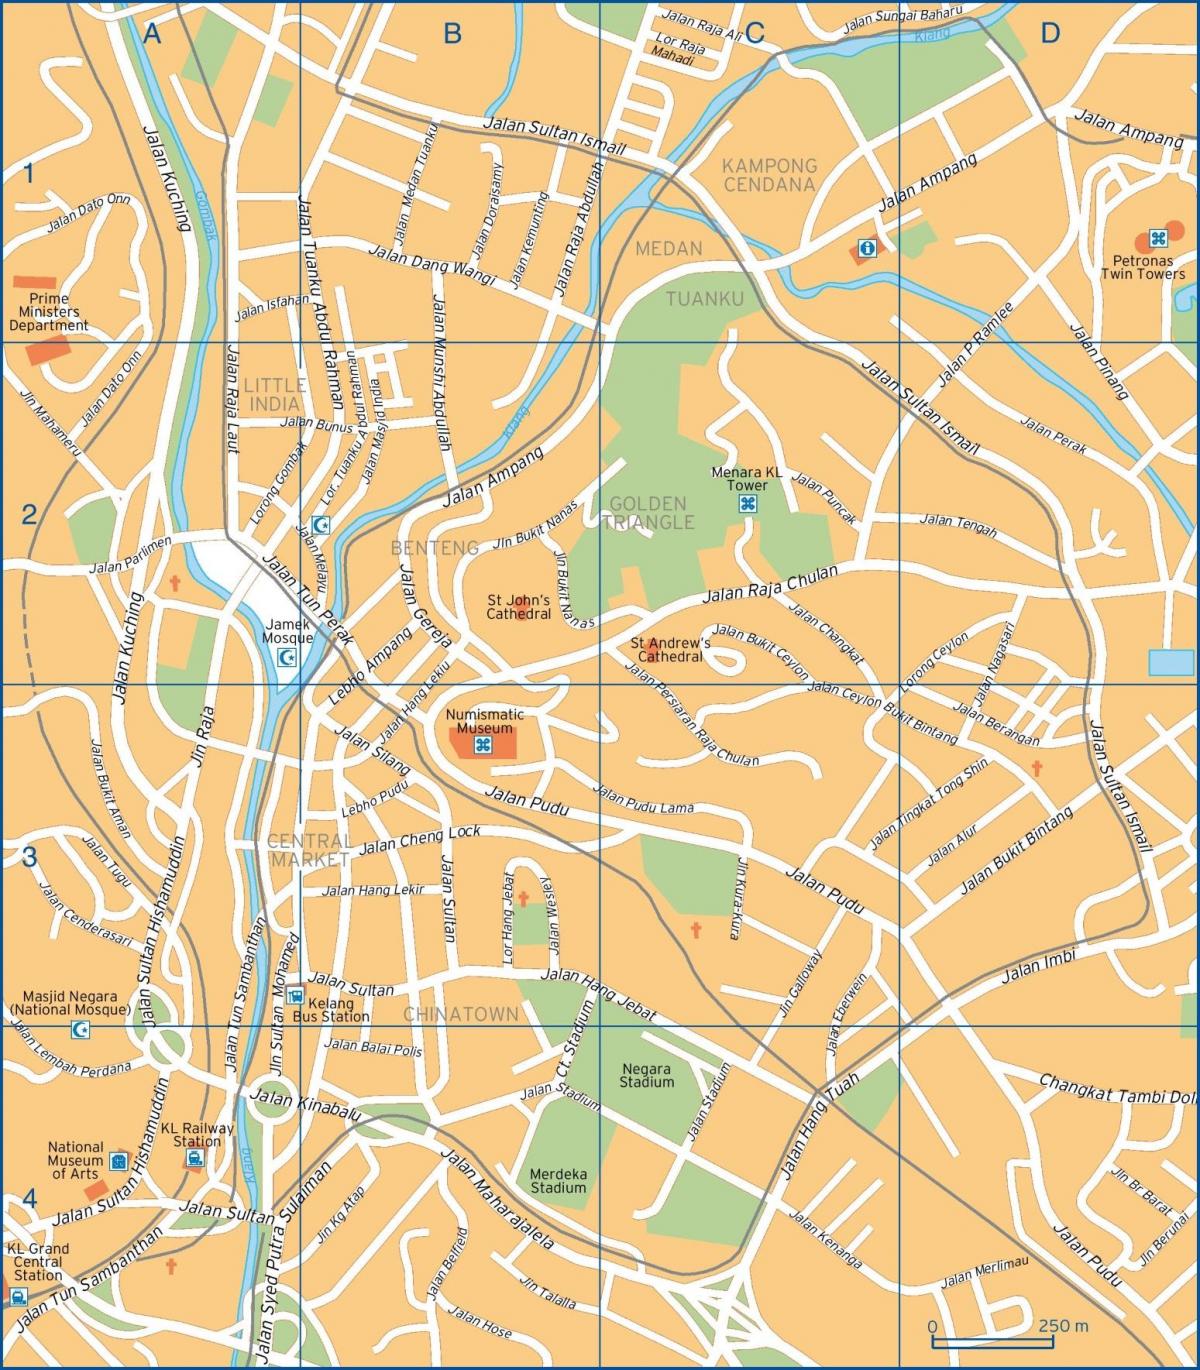 خريطة شوارع كوالالمبور (KL)